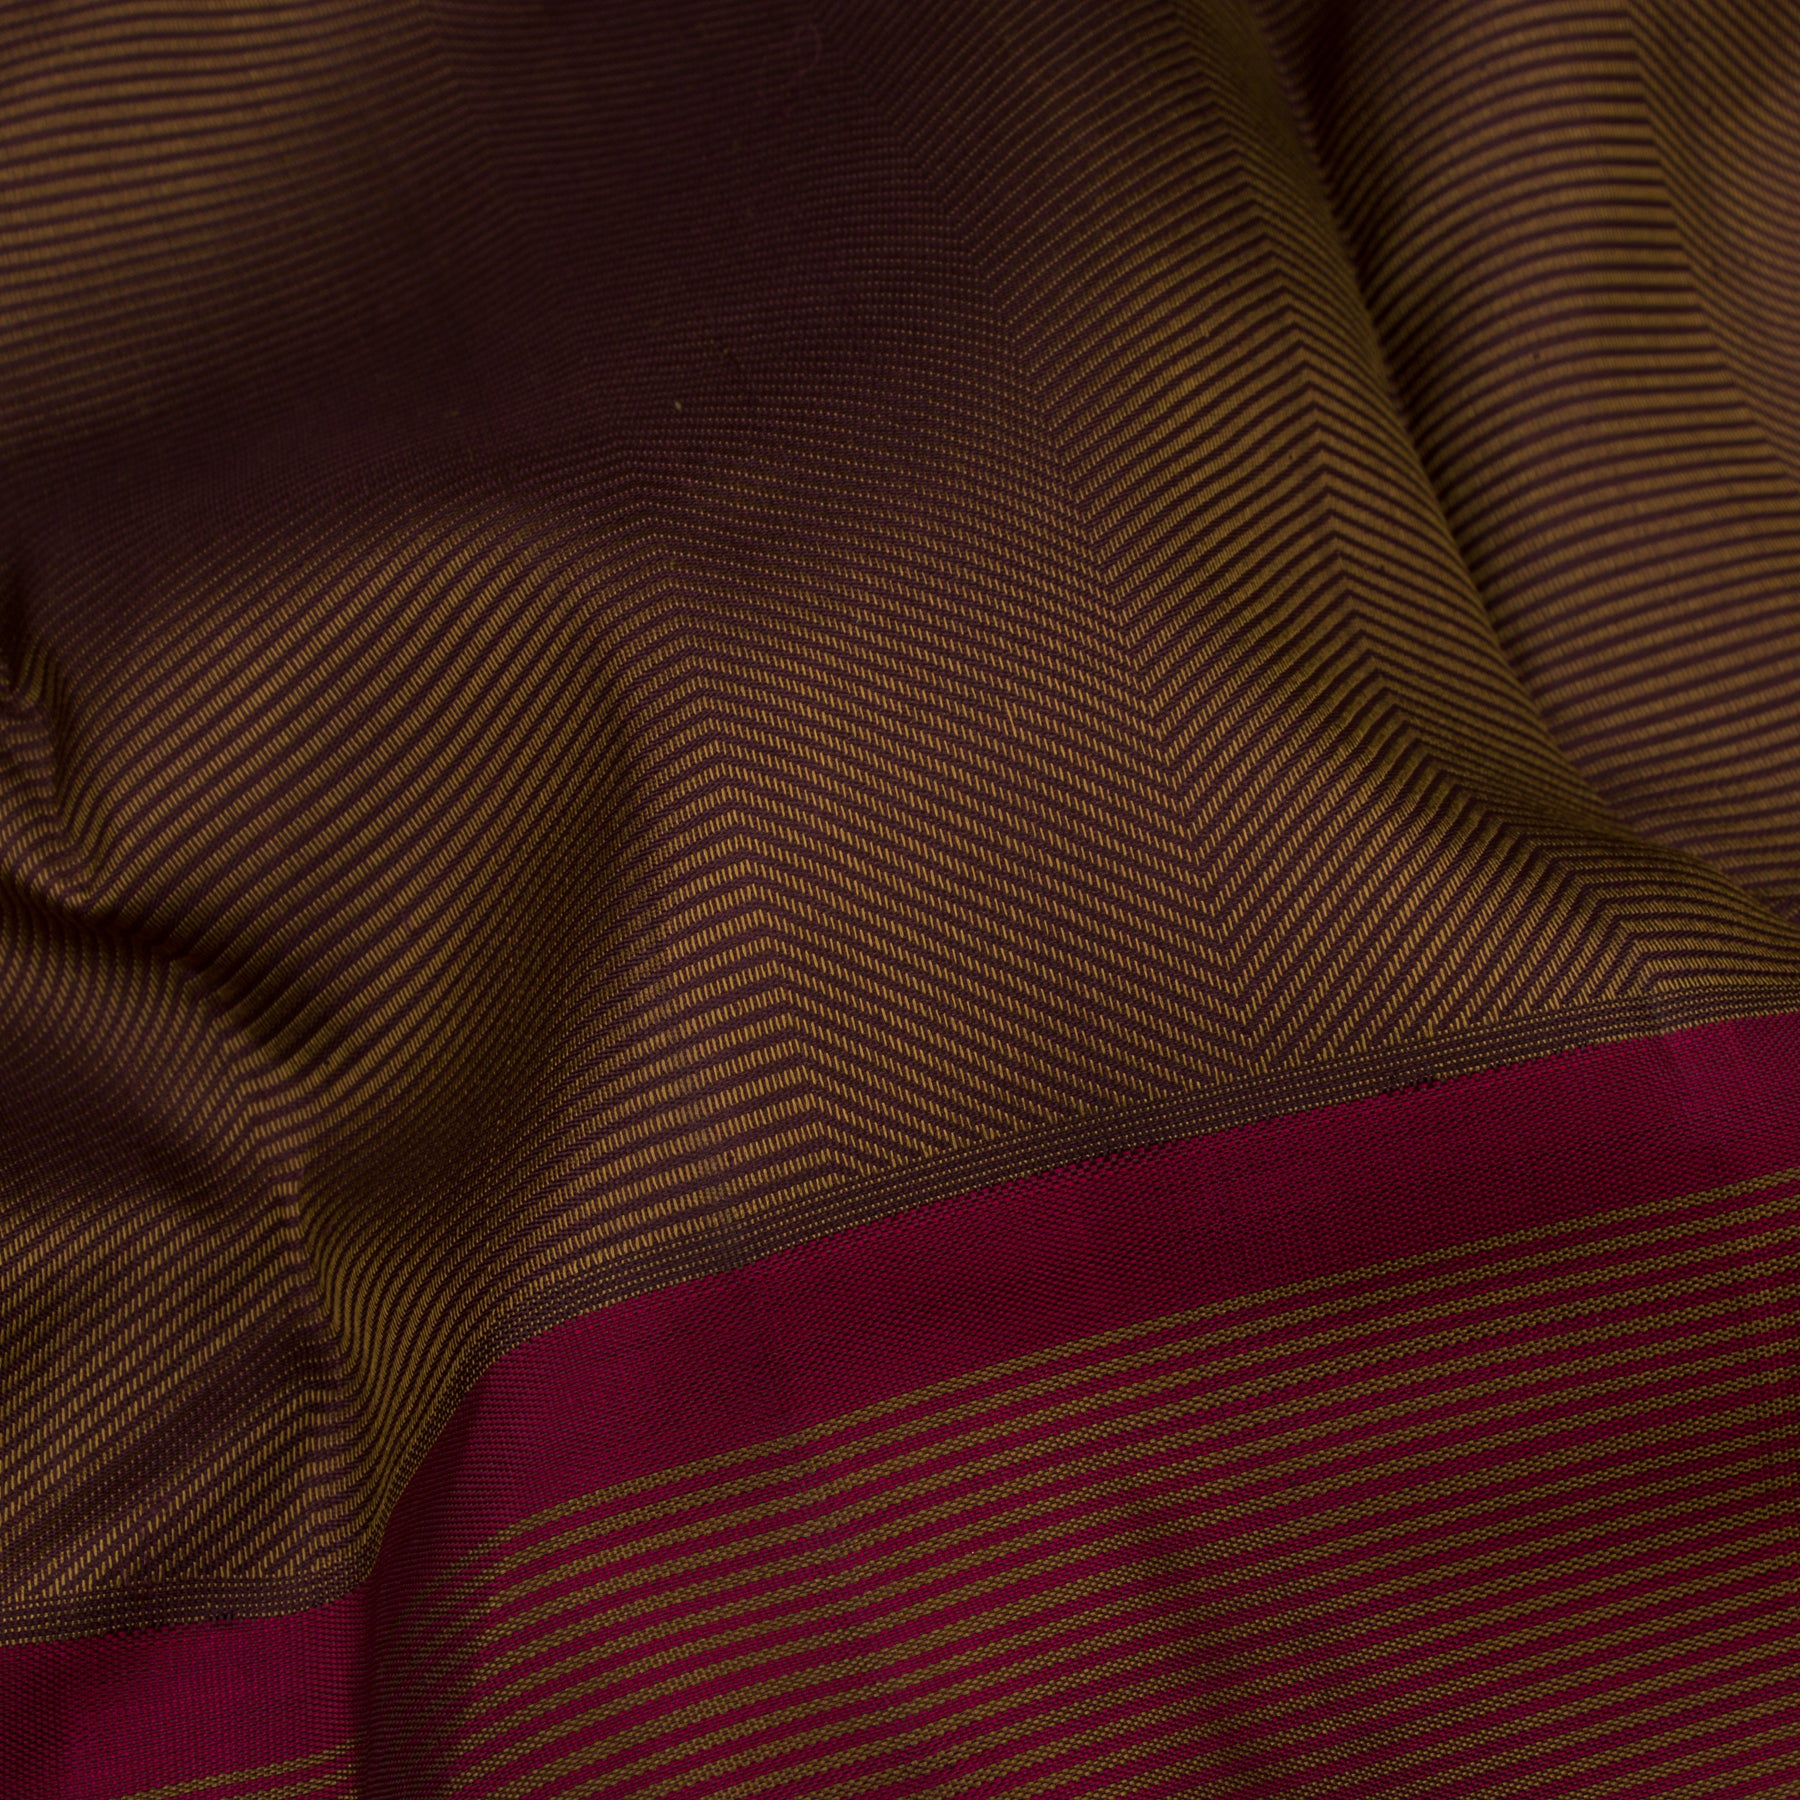 Kanakavalli Kanjivaram Silk Sari 23-599-HS001-00802 - Fabric View